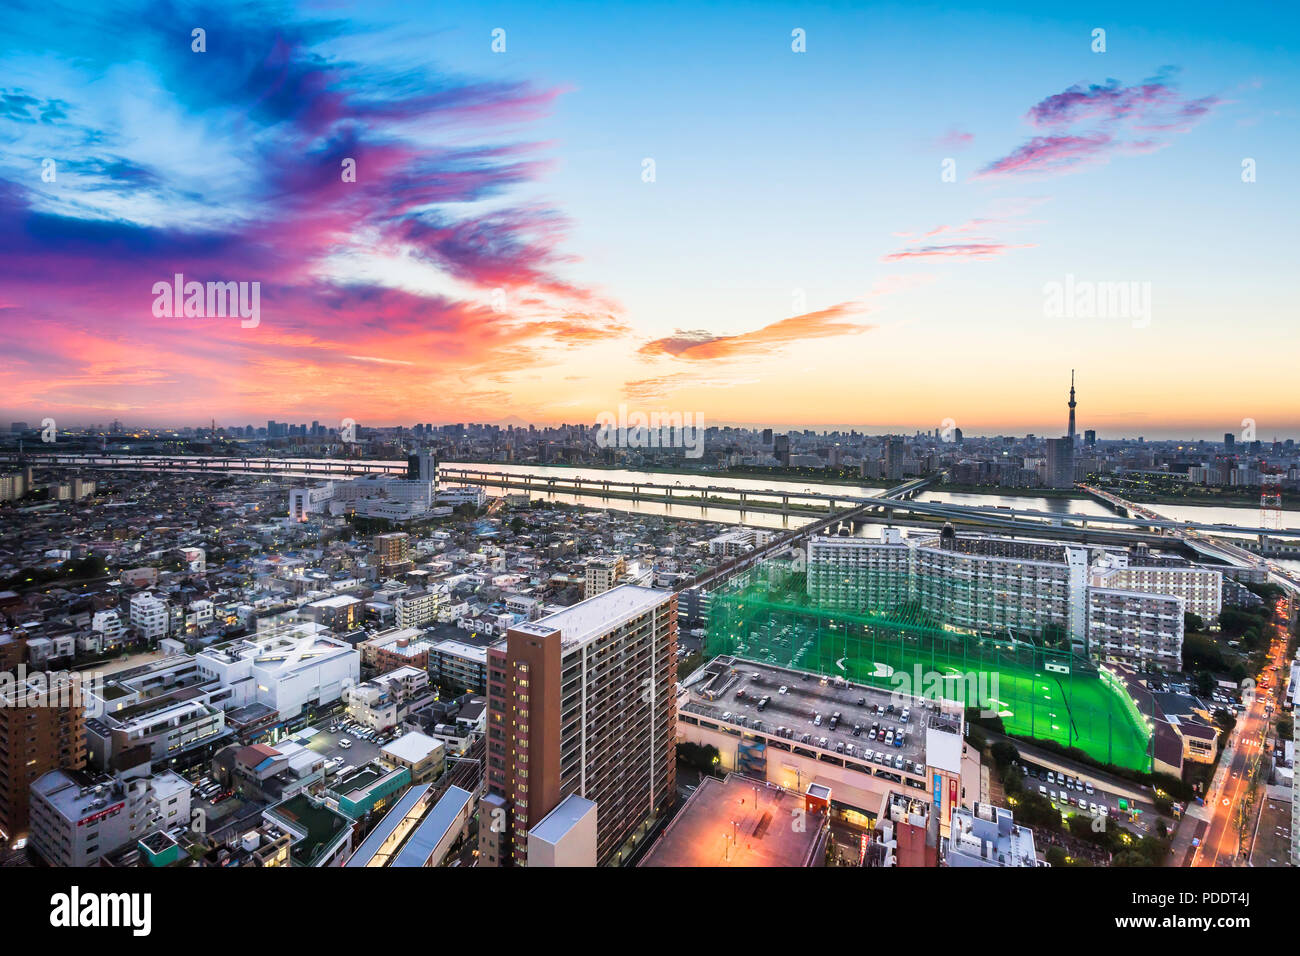 Concepto de negocio y cultura - vistas panorámicas del horizonte de la ciudad de ojo de pájaro moderno vista aérea con Monte Fuji y Tokio skytree bajo el espectacular atardecer y resplandor Foto de stock